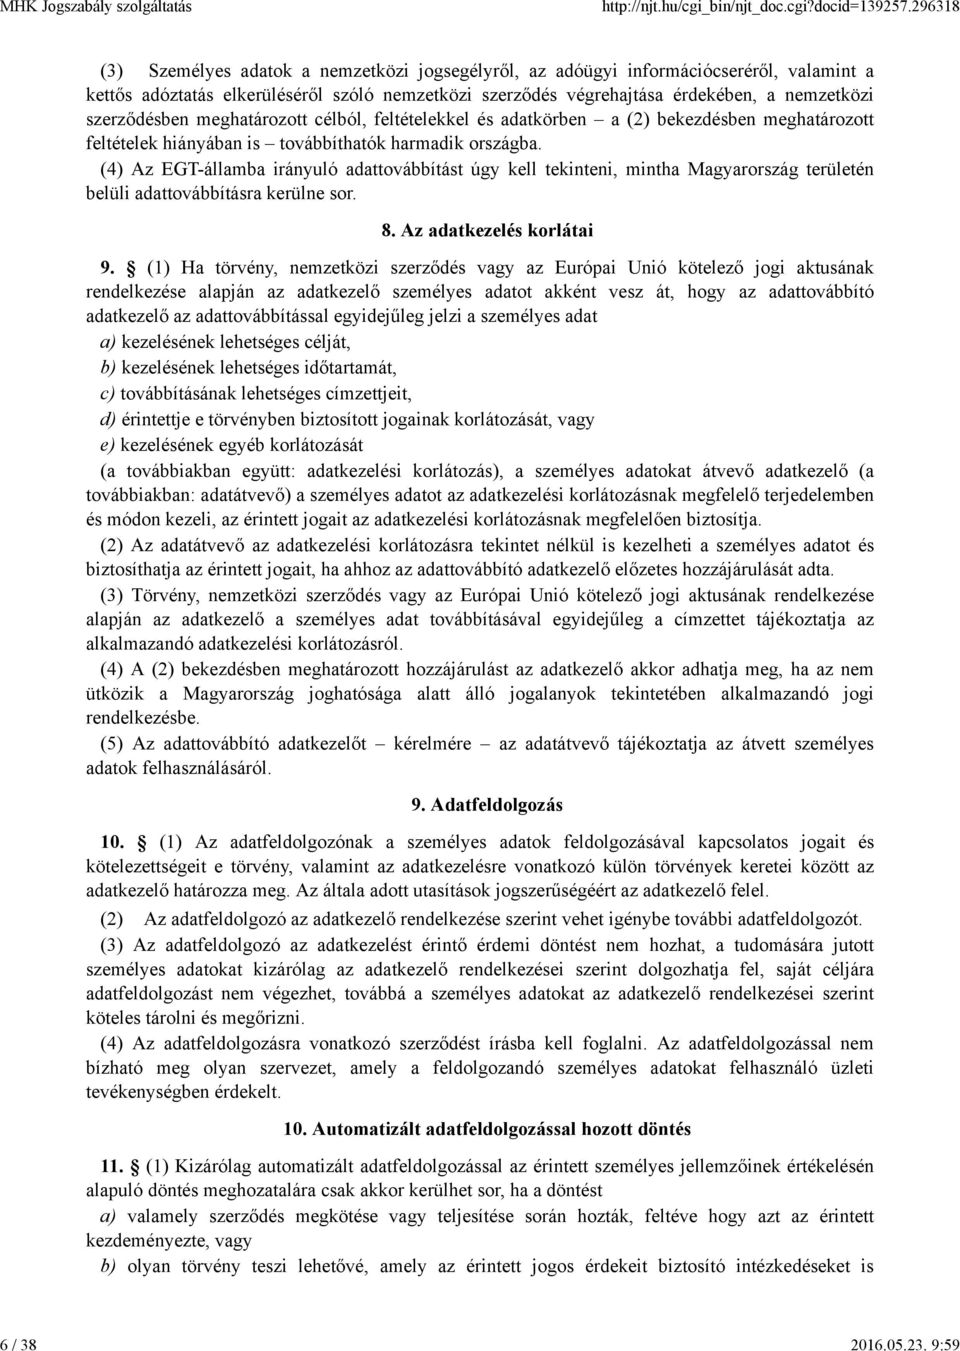 (4) Az EGT-államba irányuló adattovábbítást úgy kell tekinteni, mintha Magyarország területén belüli adattovábbításra kerülne sor. 8. Az adatkezelés korlátai 9.